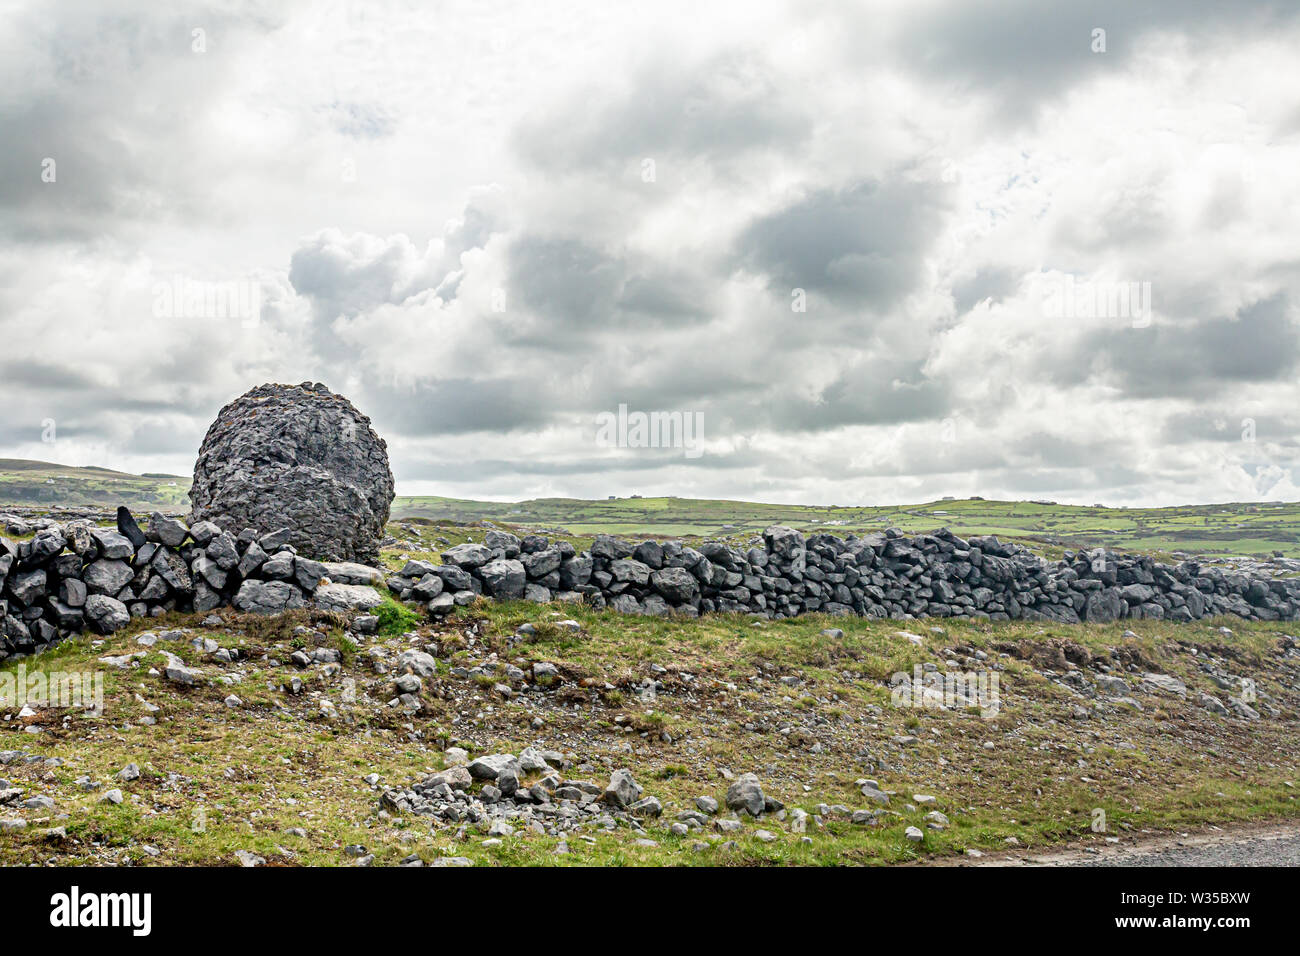 Beau paysage irlandais dans la vallée d'un Caher pierre géant à côté d'une clôture en pierre, le Burren, façon sauvage de l'Atlantique, merveilleux printemps jour nuageux Banque D'Images